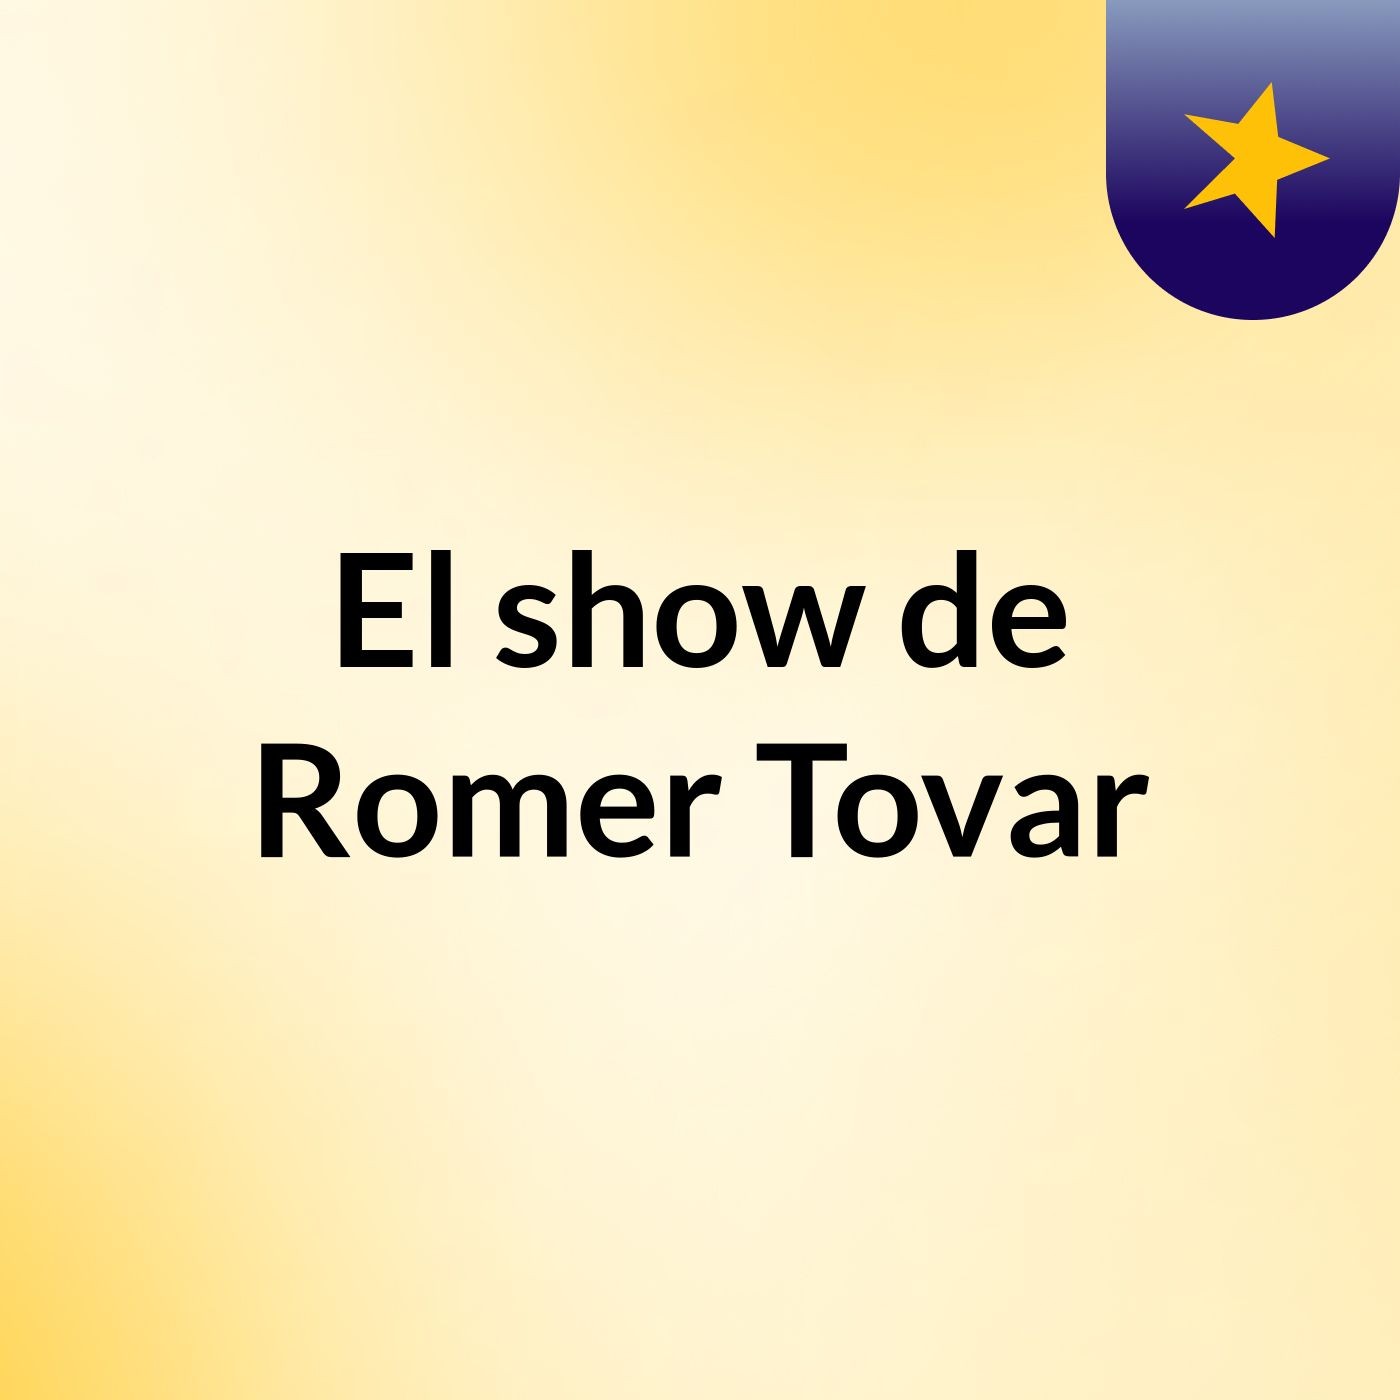 El show de Romer Tovar